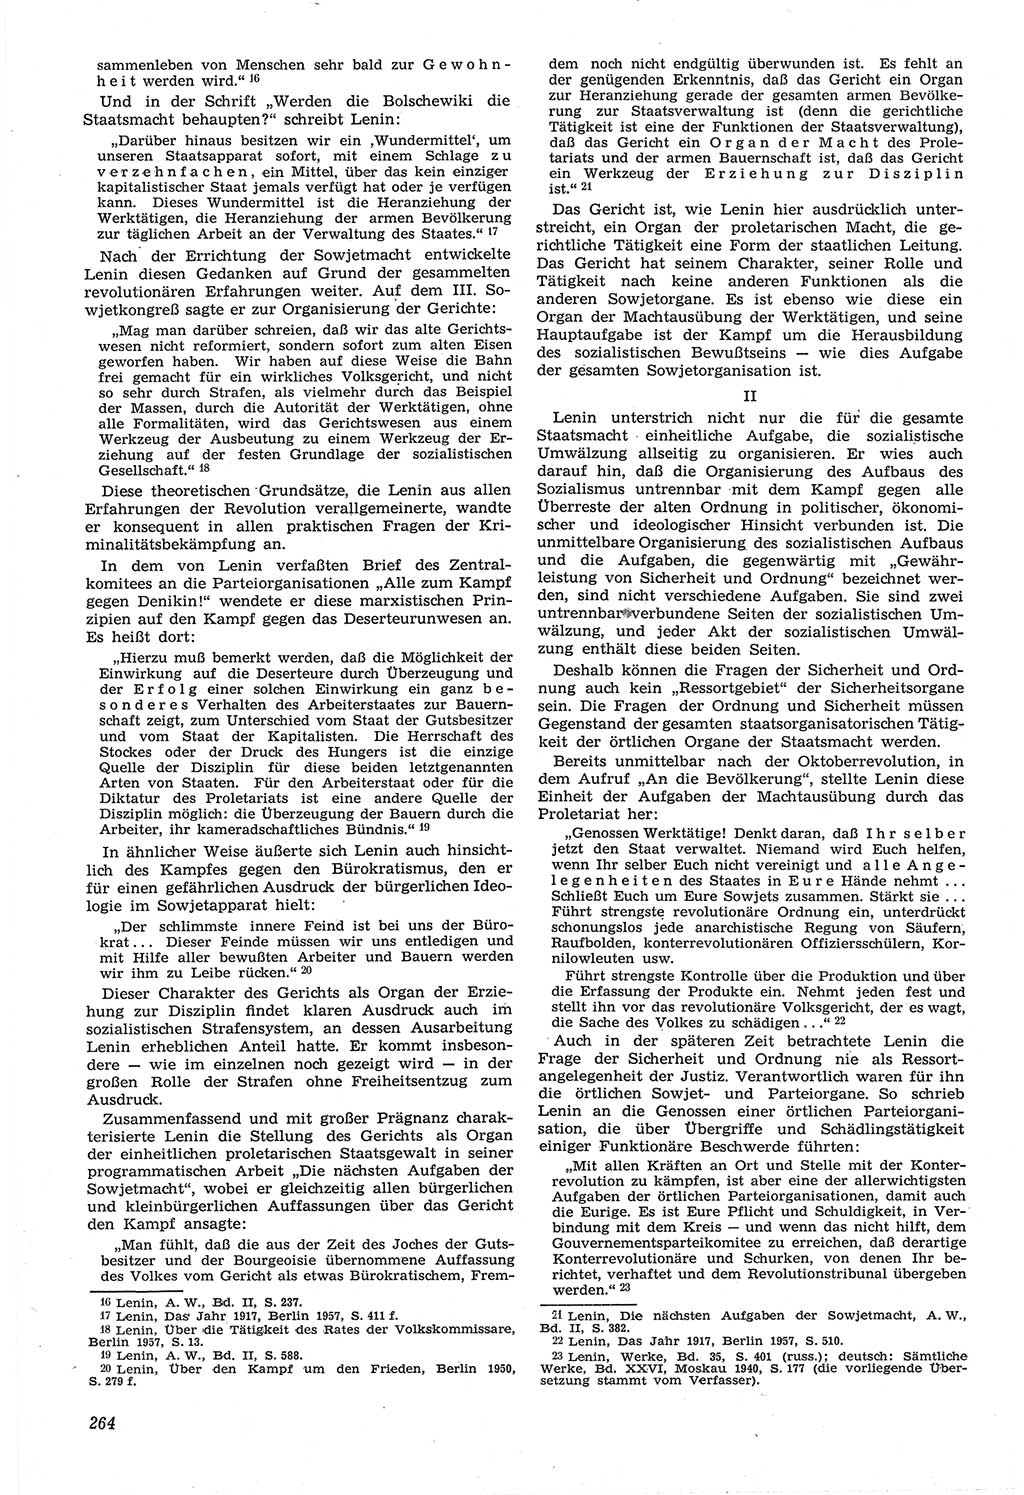 Neue Justiz (NJ), Zeitschrift für Recht und Rechtswissenschaft [Deutsche Demokratische Republik (DDR)], 14. Jahrgang 1960, Seite 264 (NJ DDR 1960, S. 264)